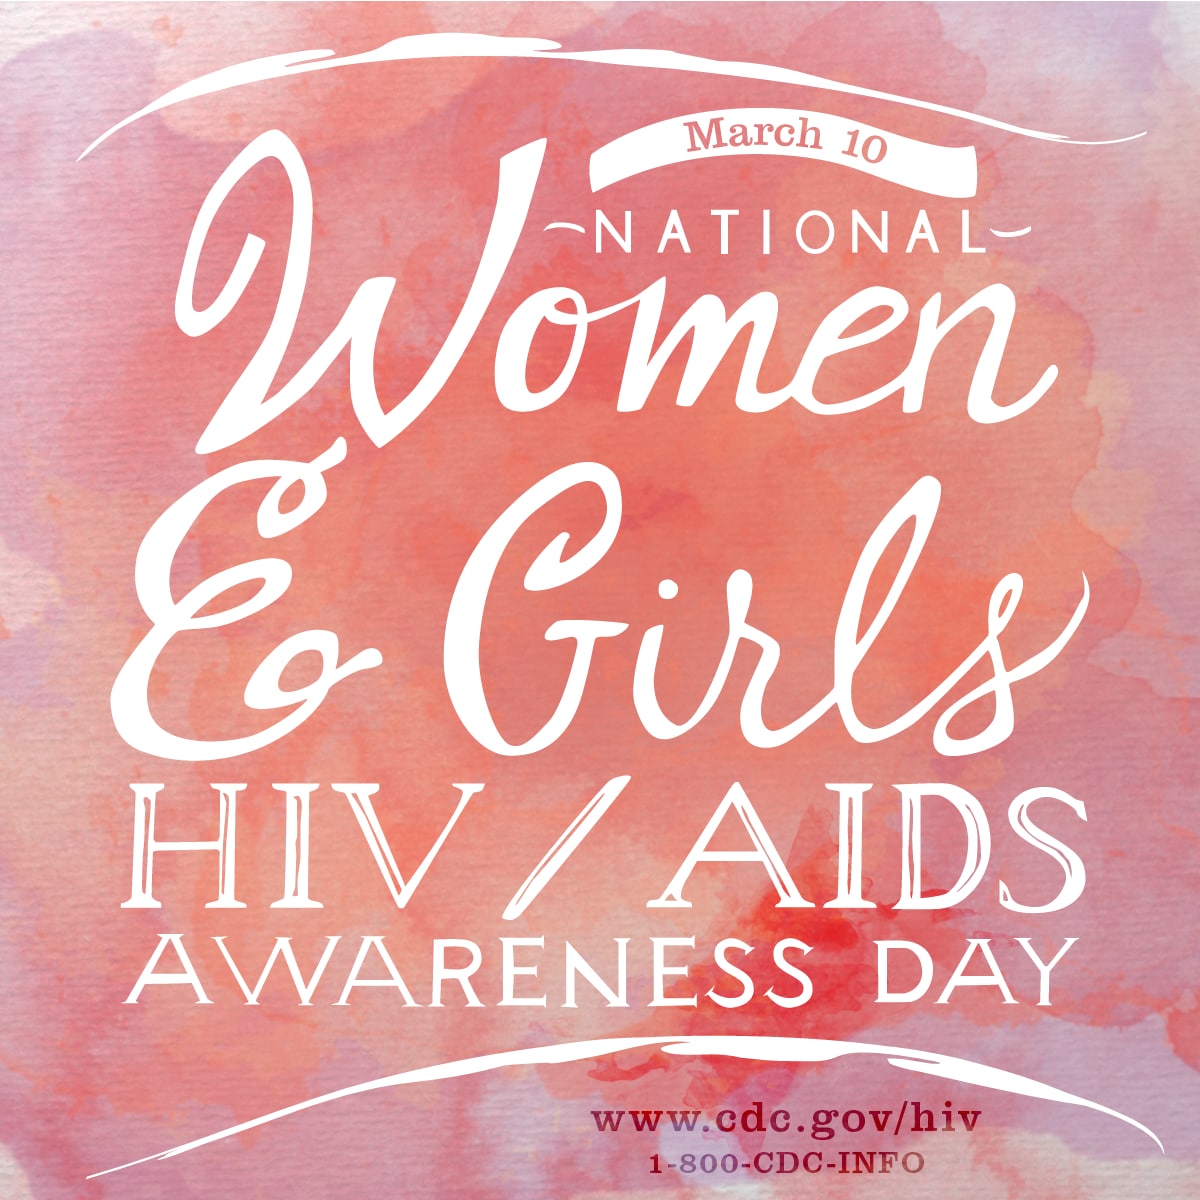 National Women And Girls Hiv Aids Awareness Day Awareness Days